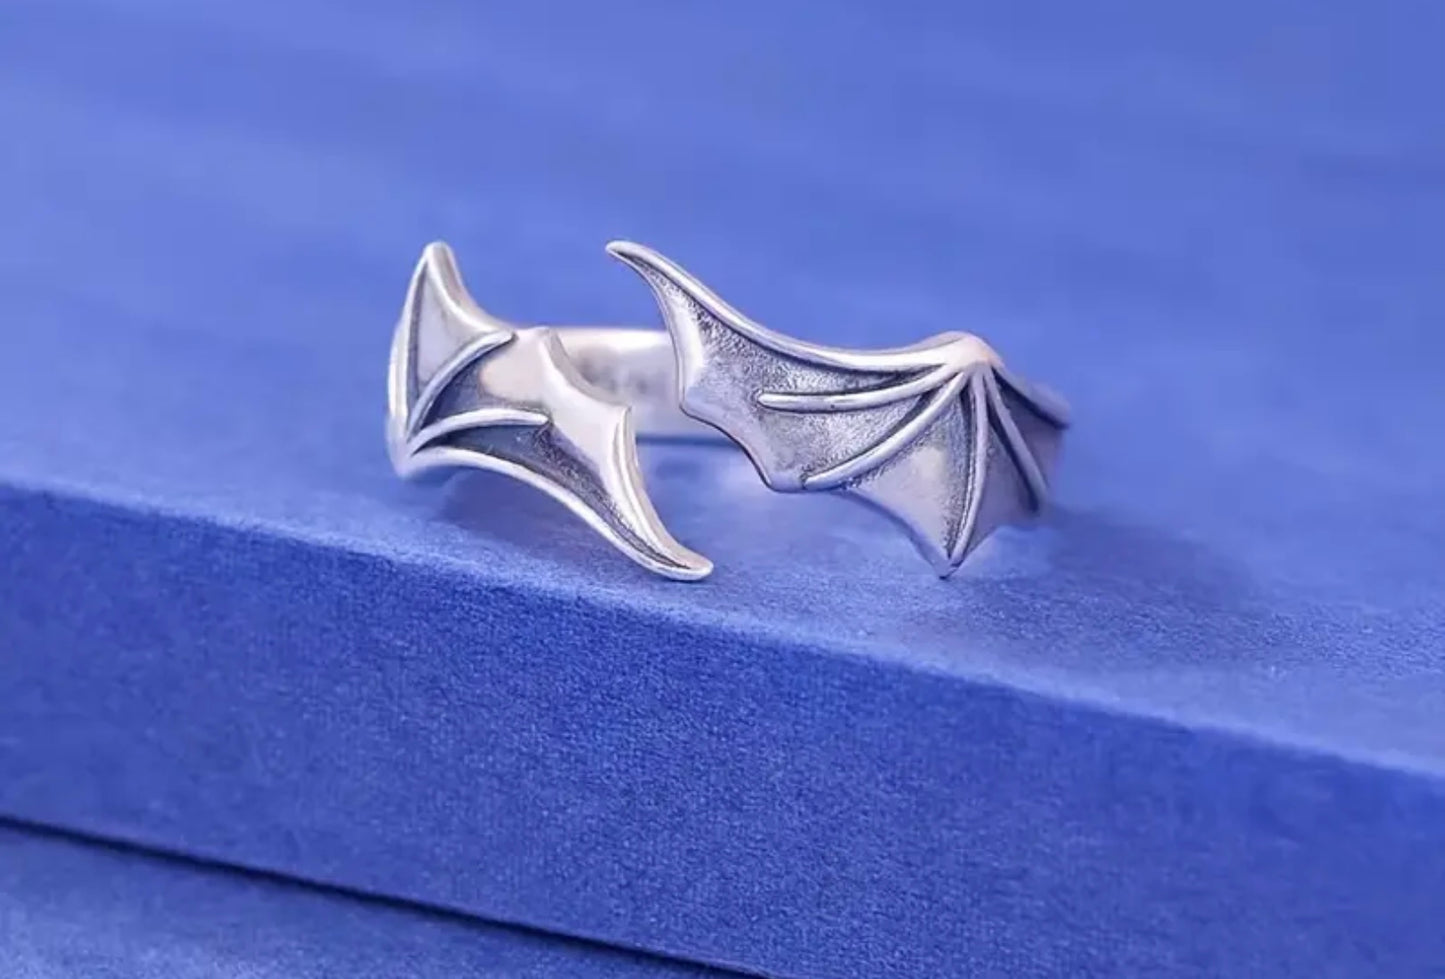 Demon wing ring